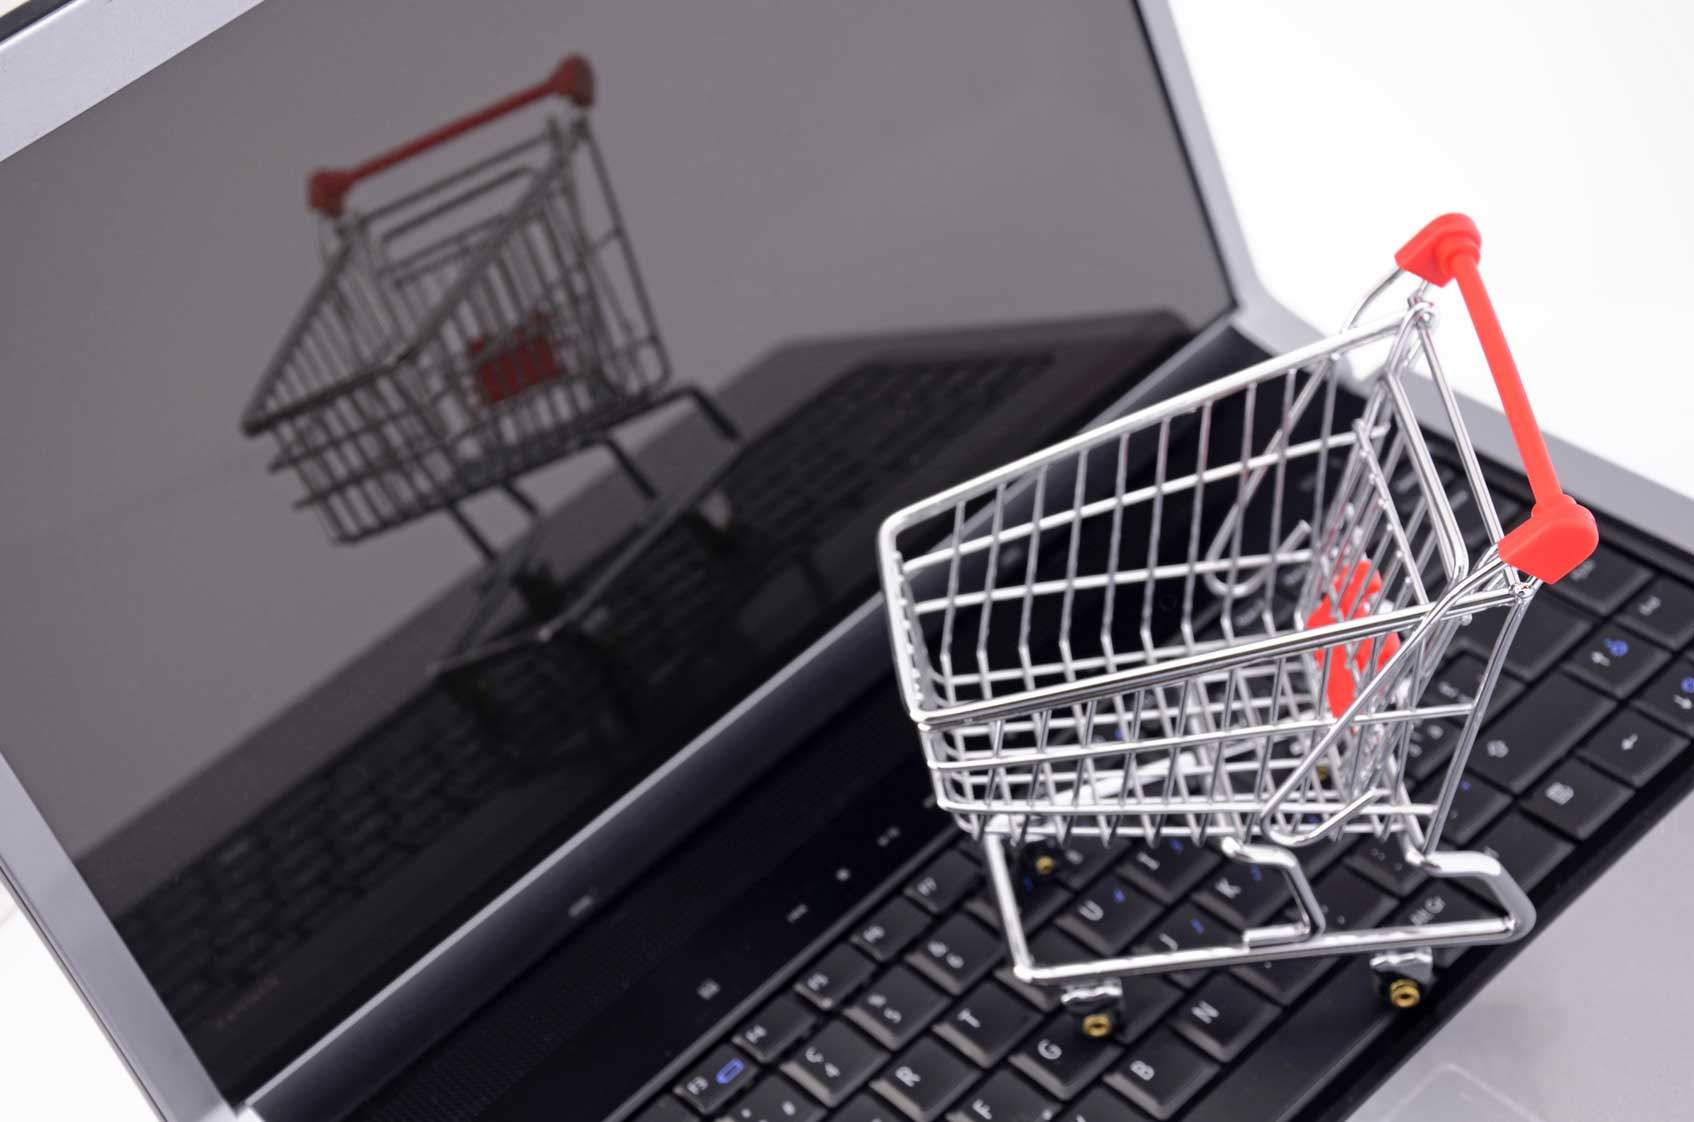 Интернет-магазины против понижения беспошлинного лимита на покупки в зарубежных онлайн-магазинах